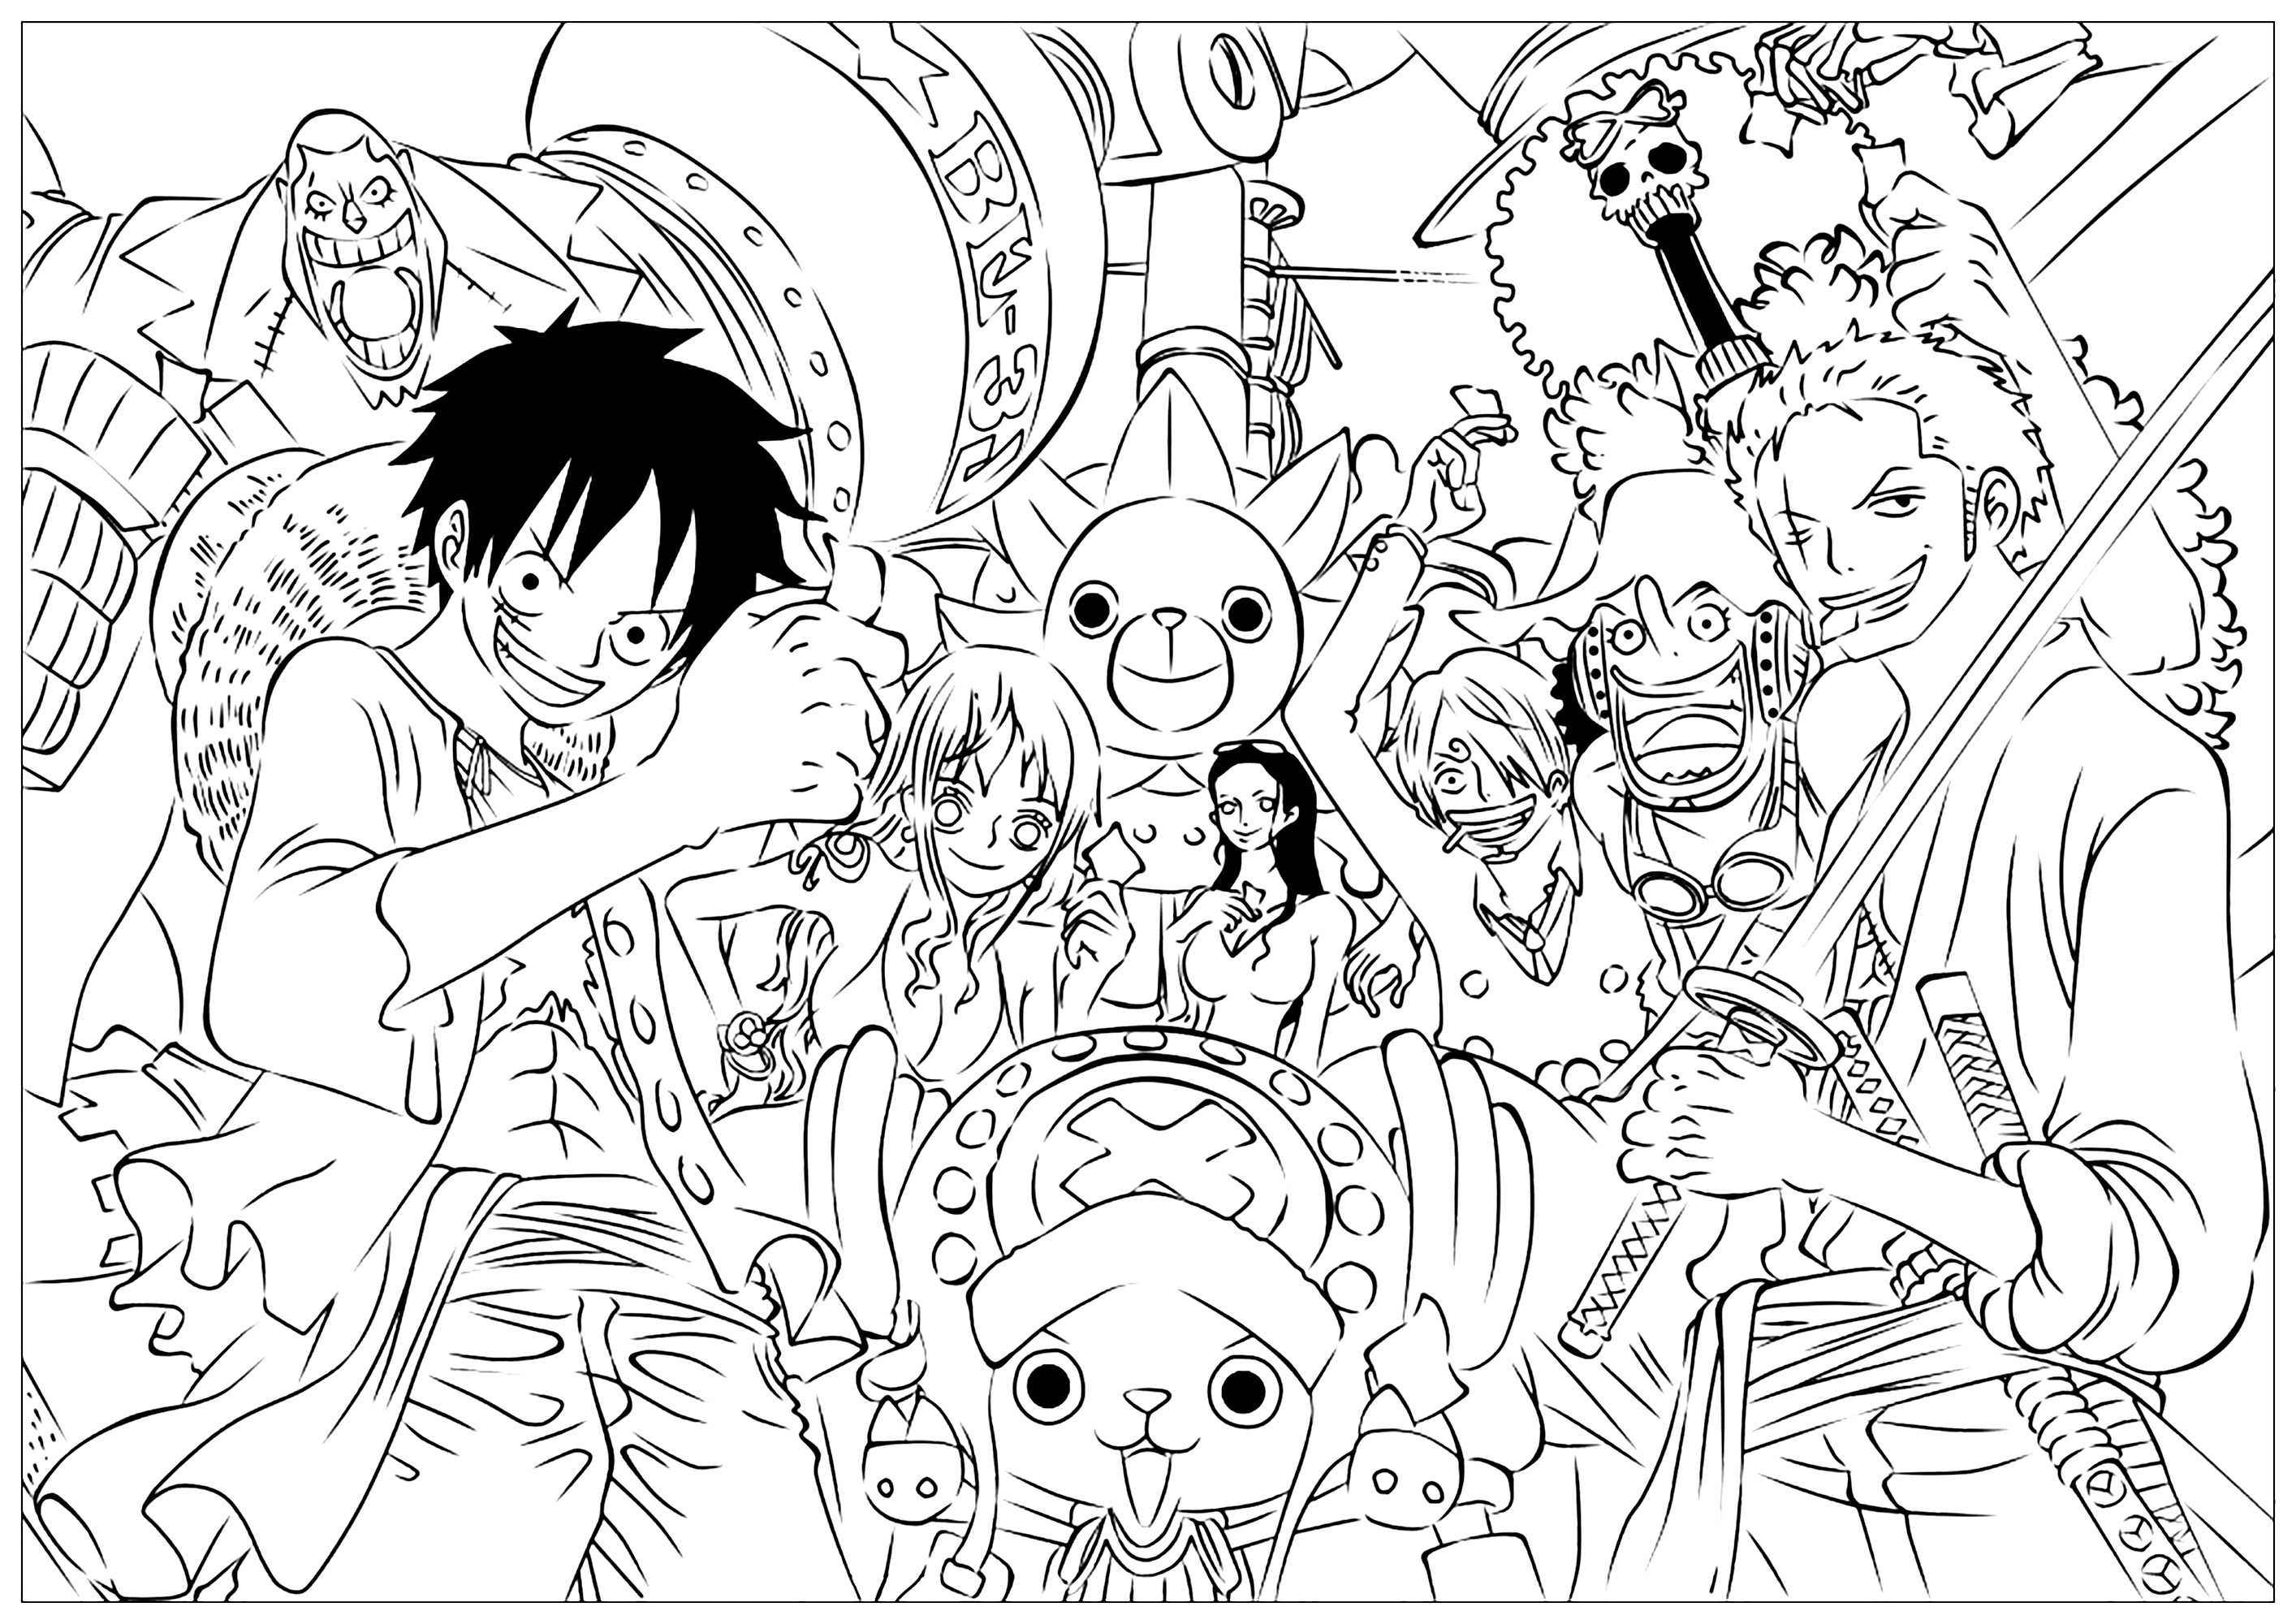 Les personnages de One piece dans un coloriage plein de détails - Mangas -  Coloriages difficiles pour adultes